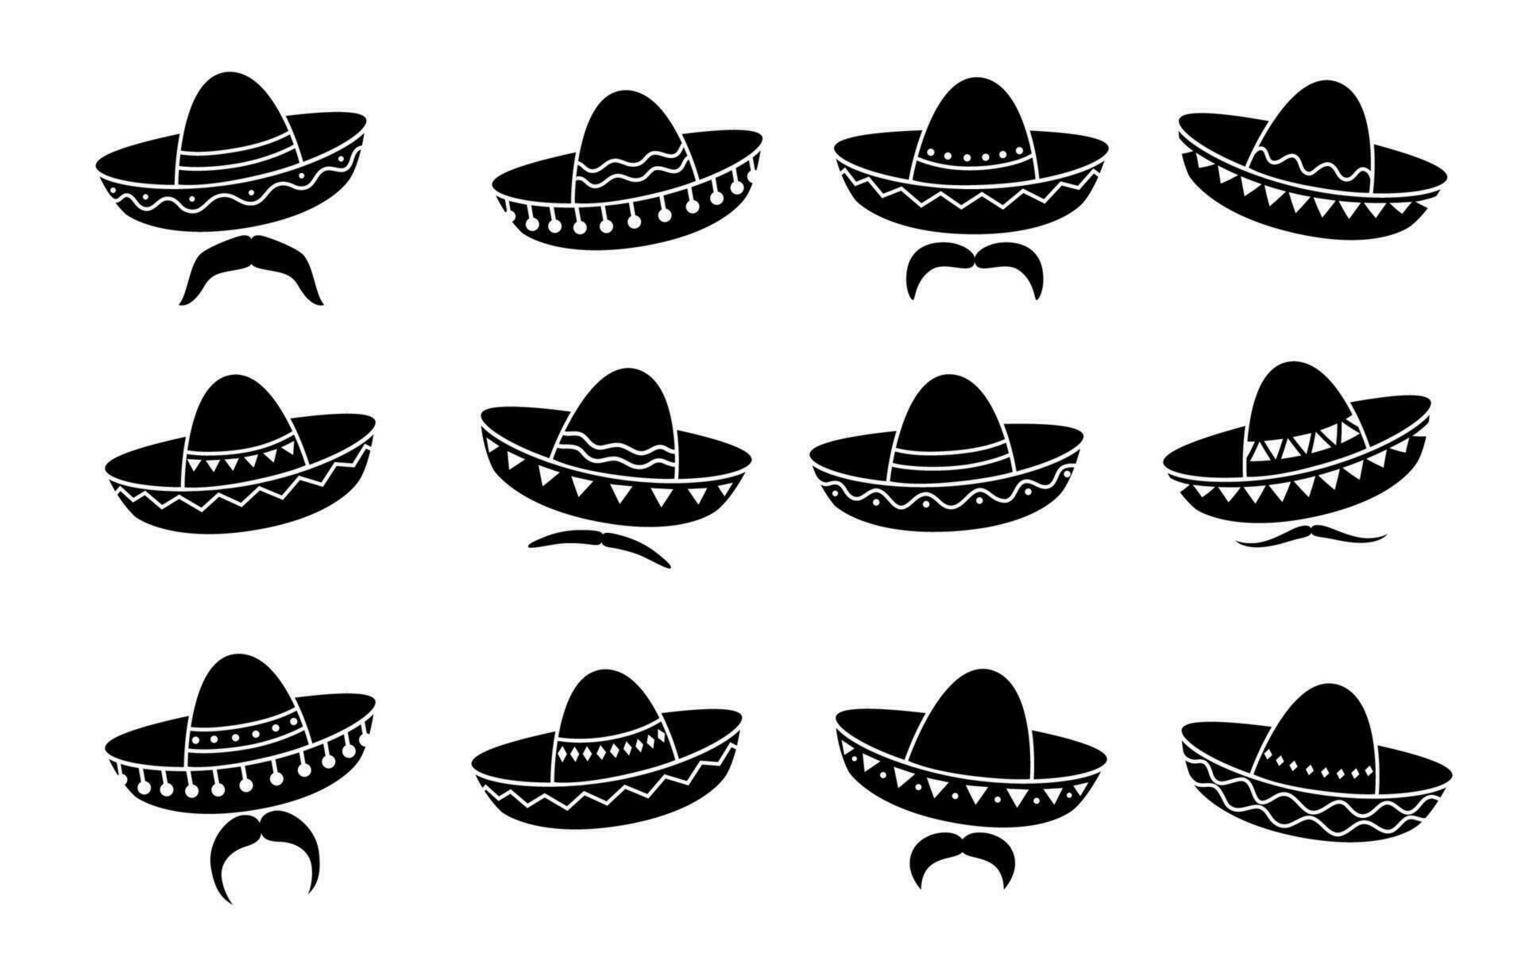 Mexican cowboy or mariachi musician sombrero vector